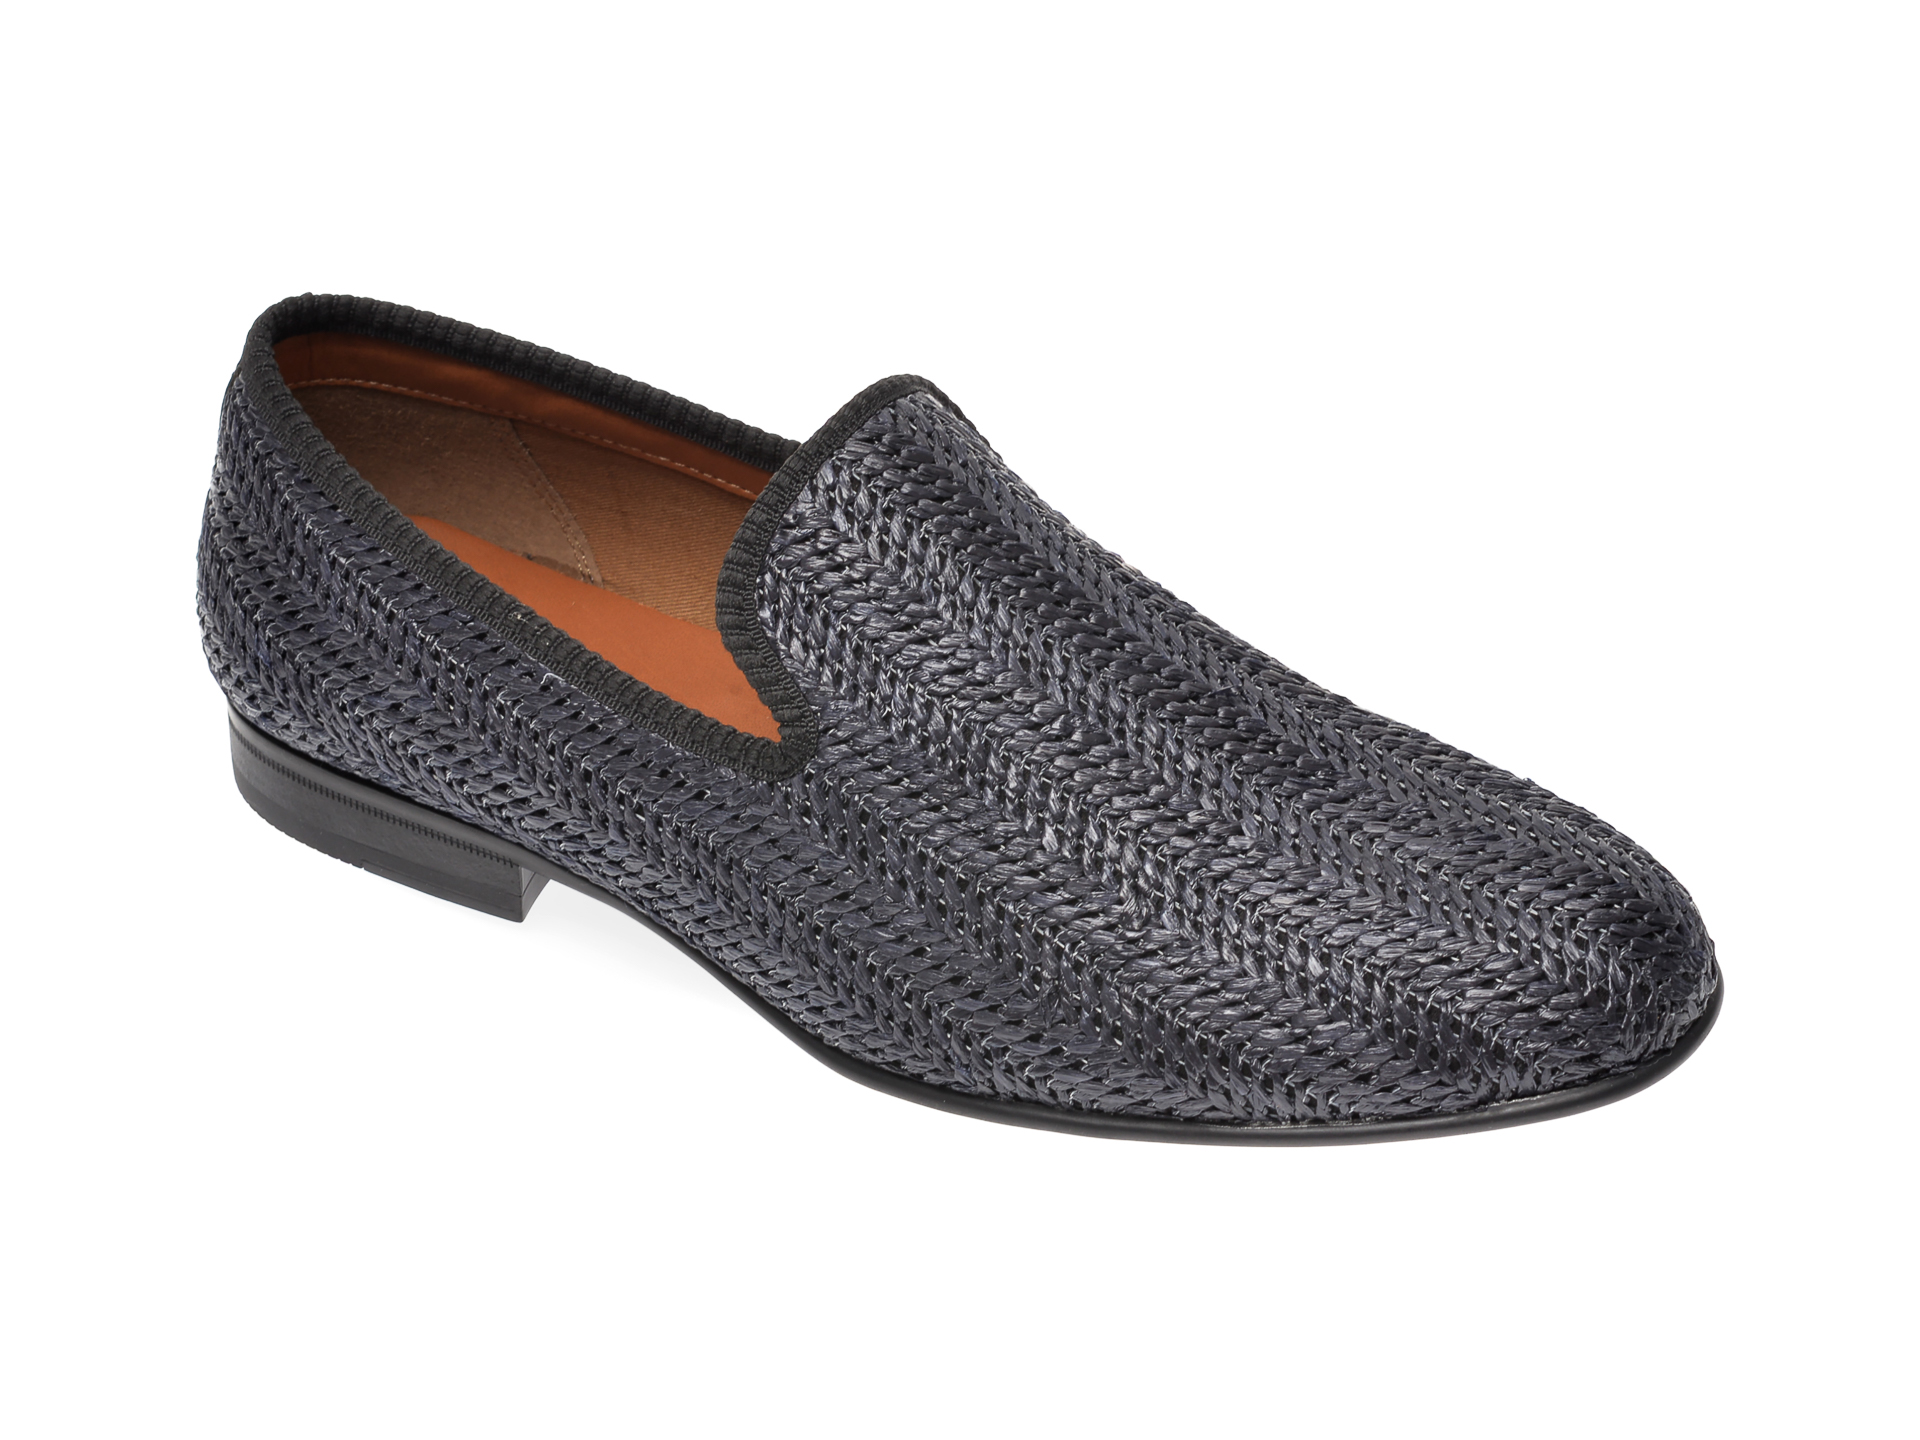 Pantofi ALDO negri, Dahlby001, din material textil